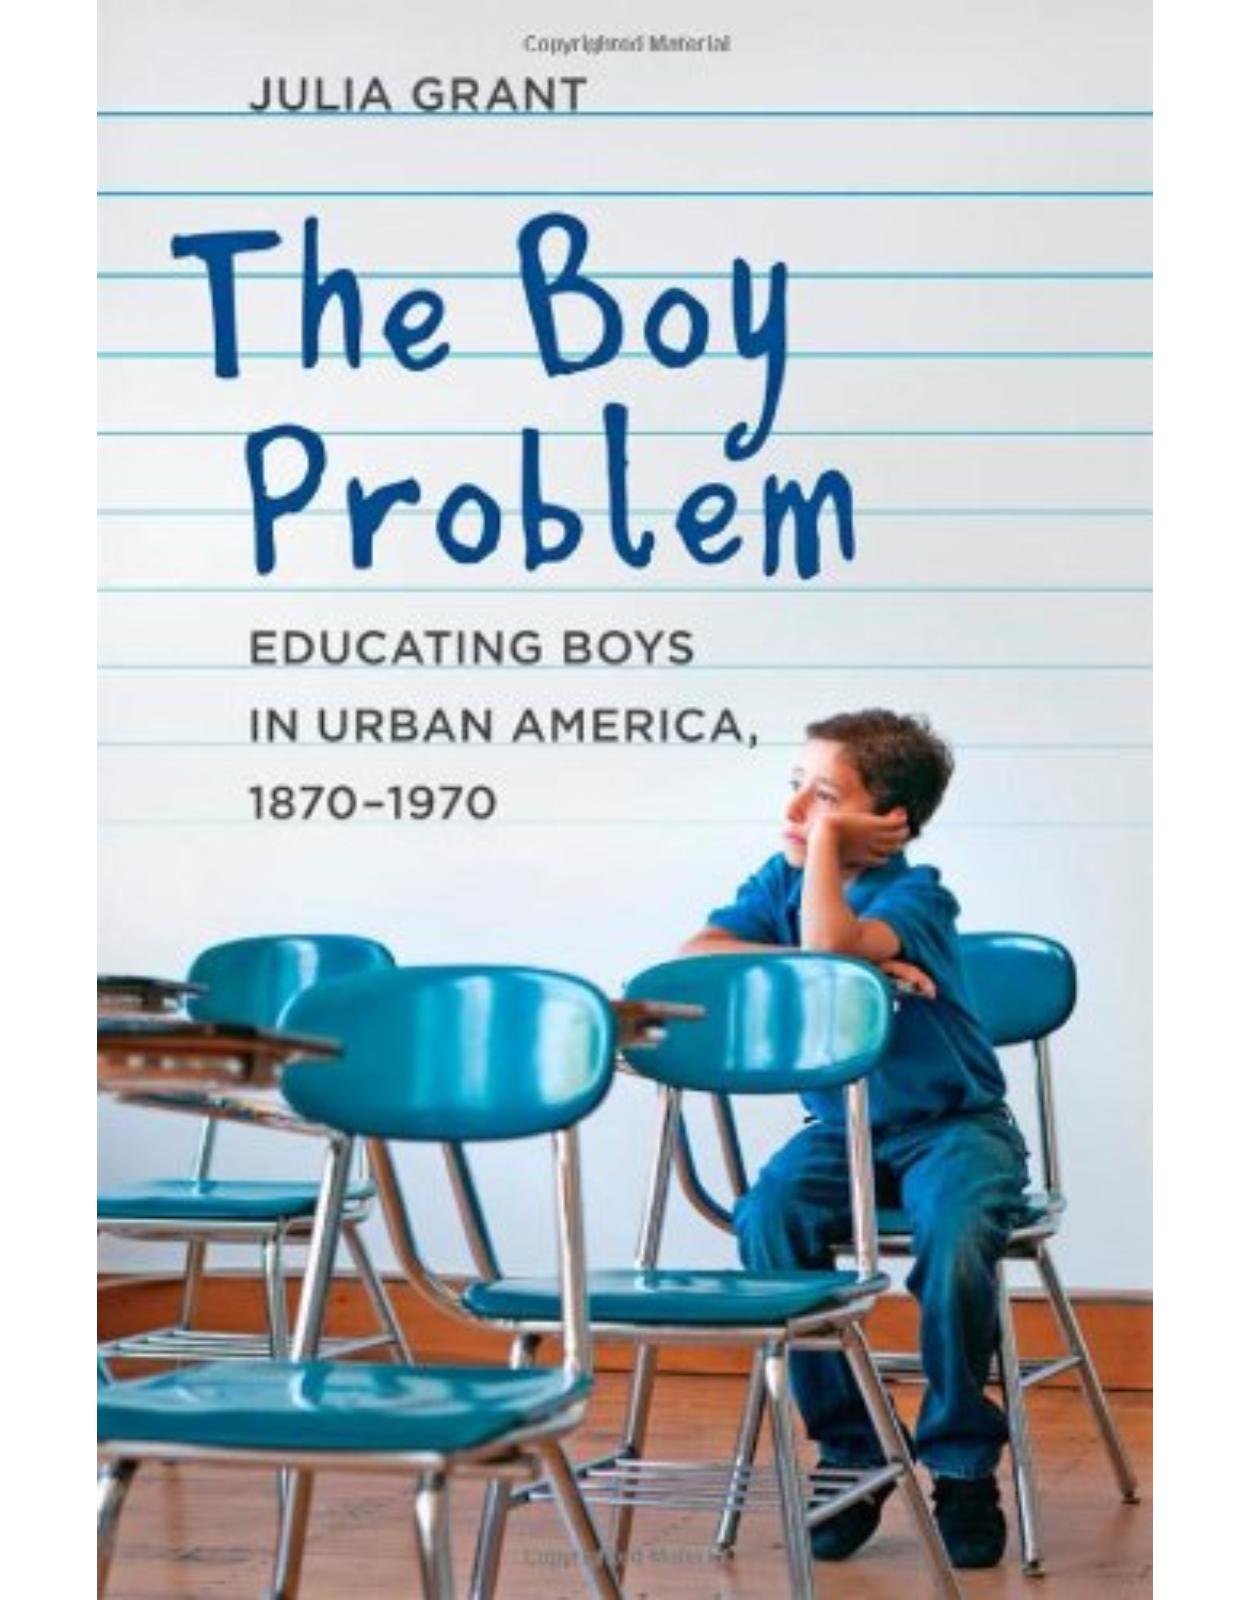 Boy Problem, Educating Boys in Urban America, 1870-1970